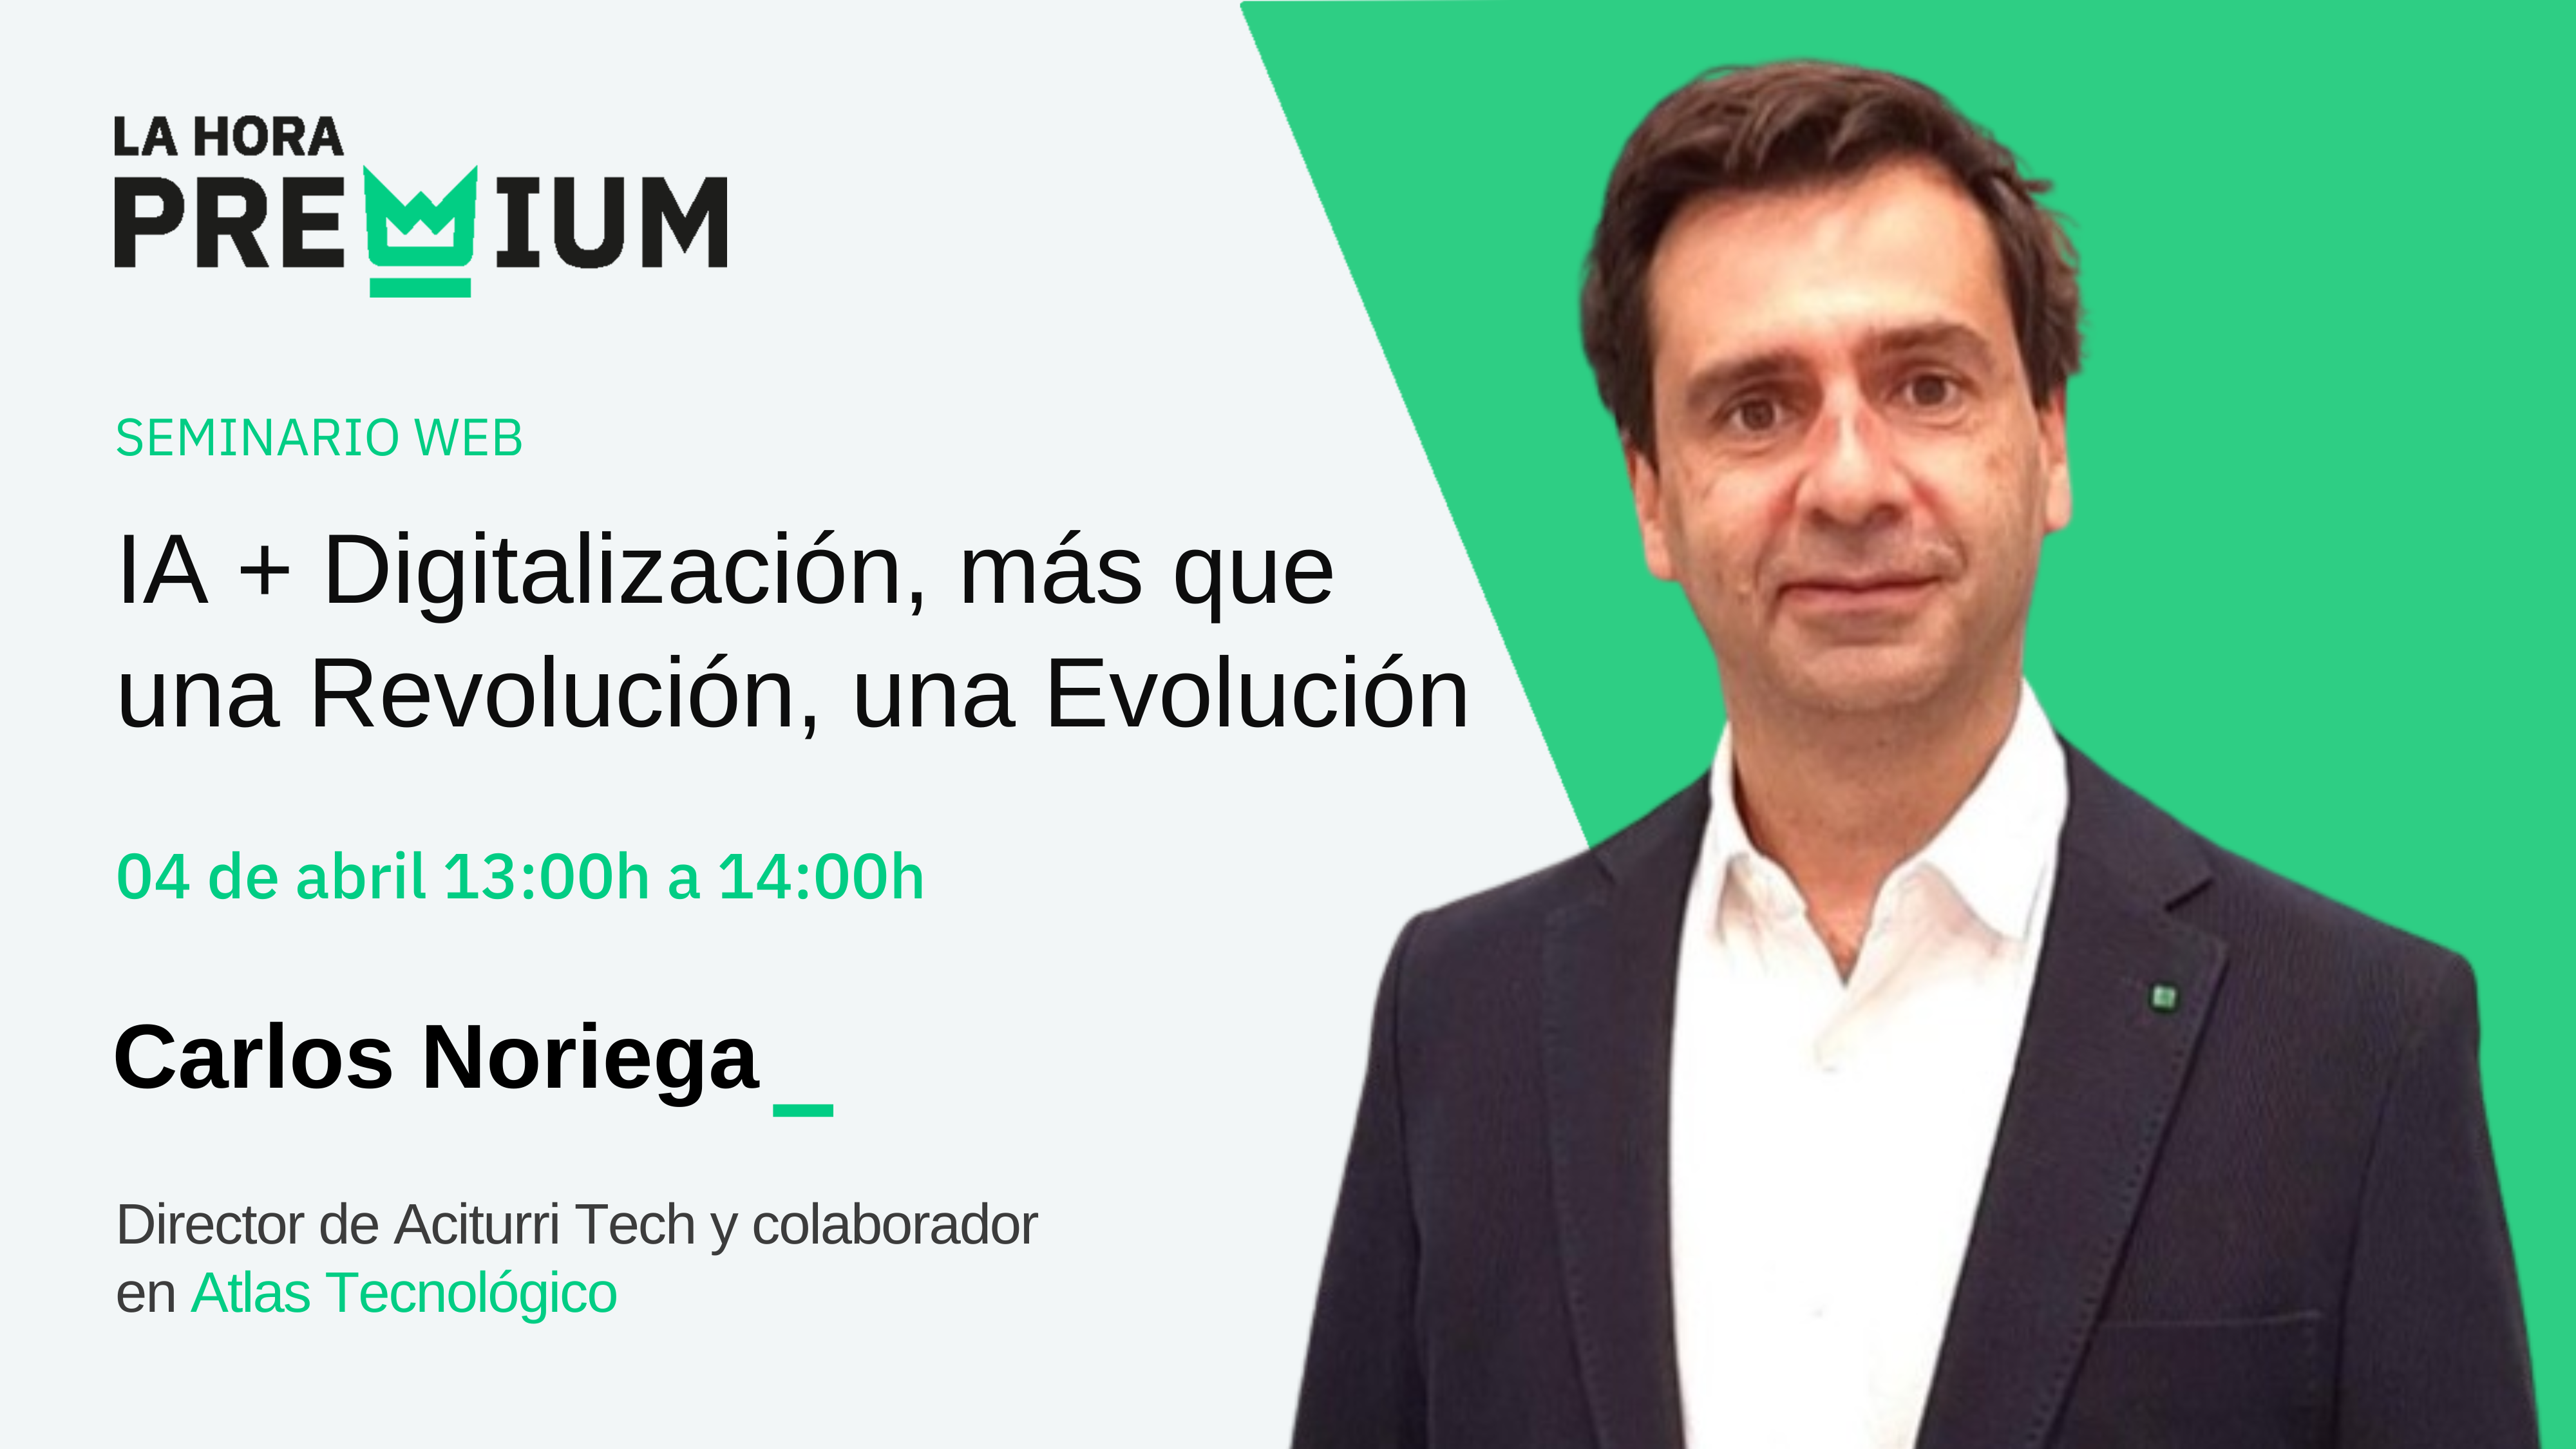 Carlos Noriega hablará sobre IA + Digitalización, más que una revolución, una evolución en la Hora Premium